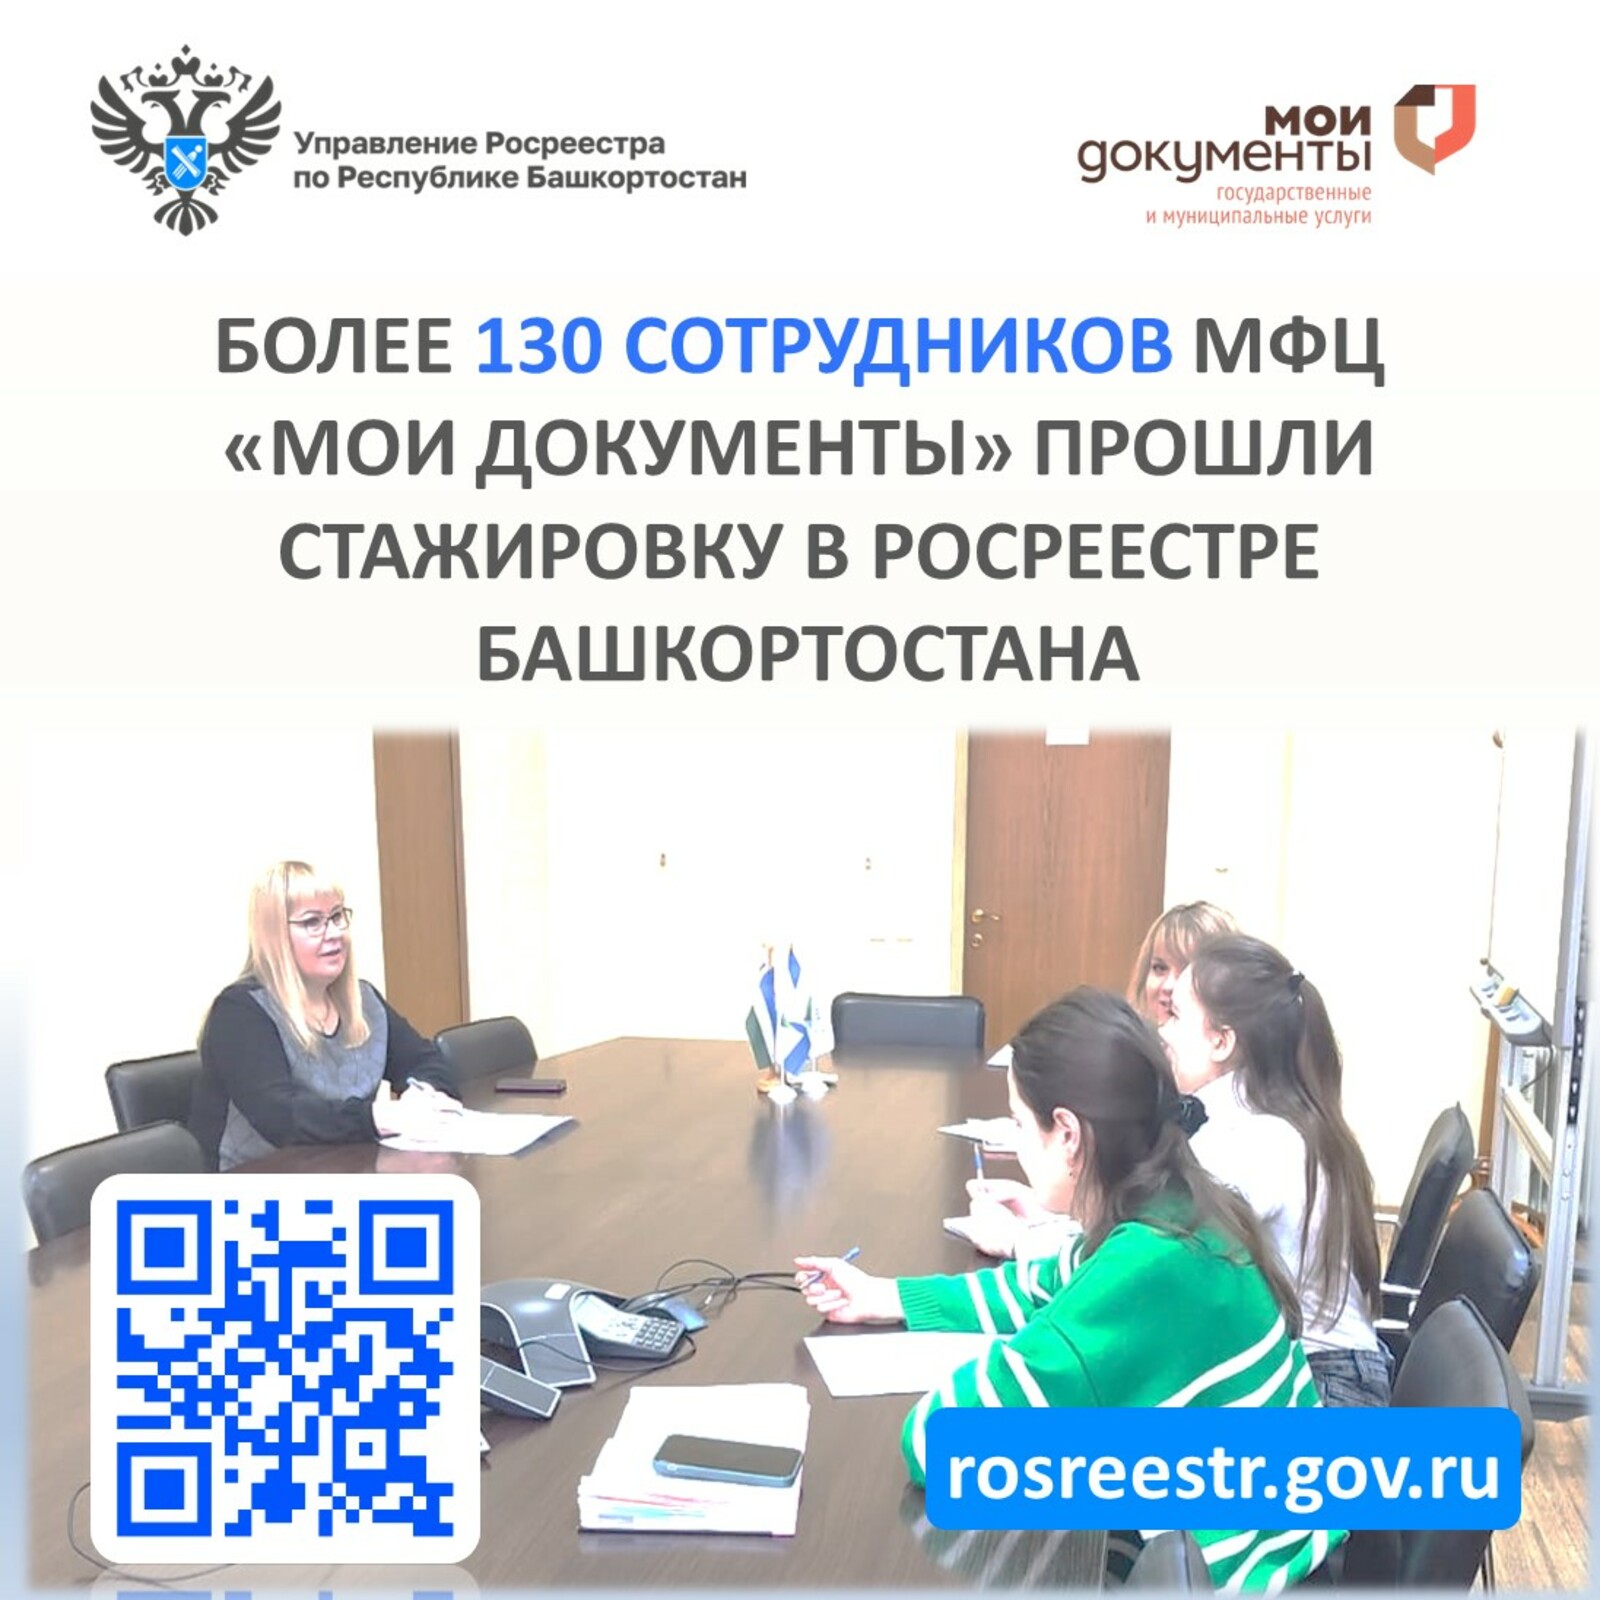 Более 130 сотрудников МФЦ «Мои документы» прошли стажировку в Росреестре Башкортостана